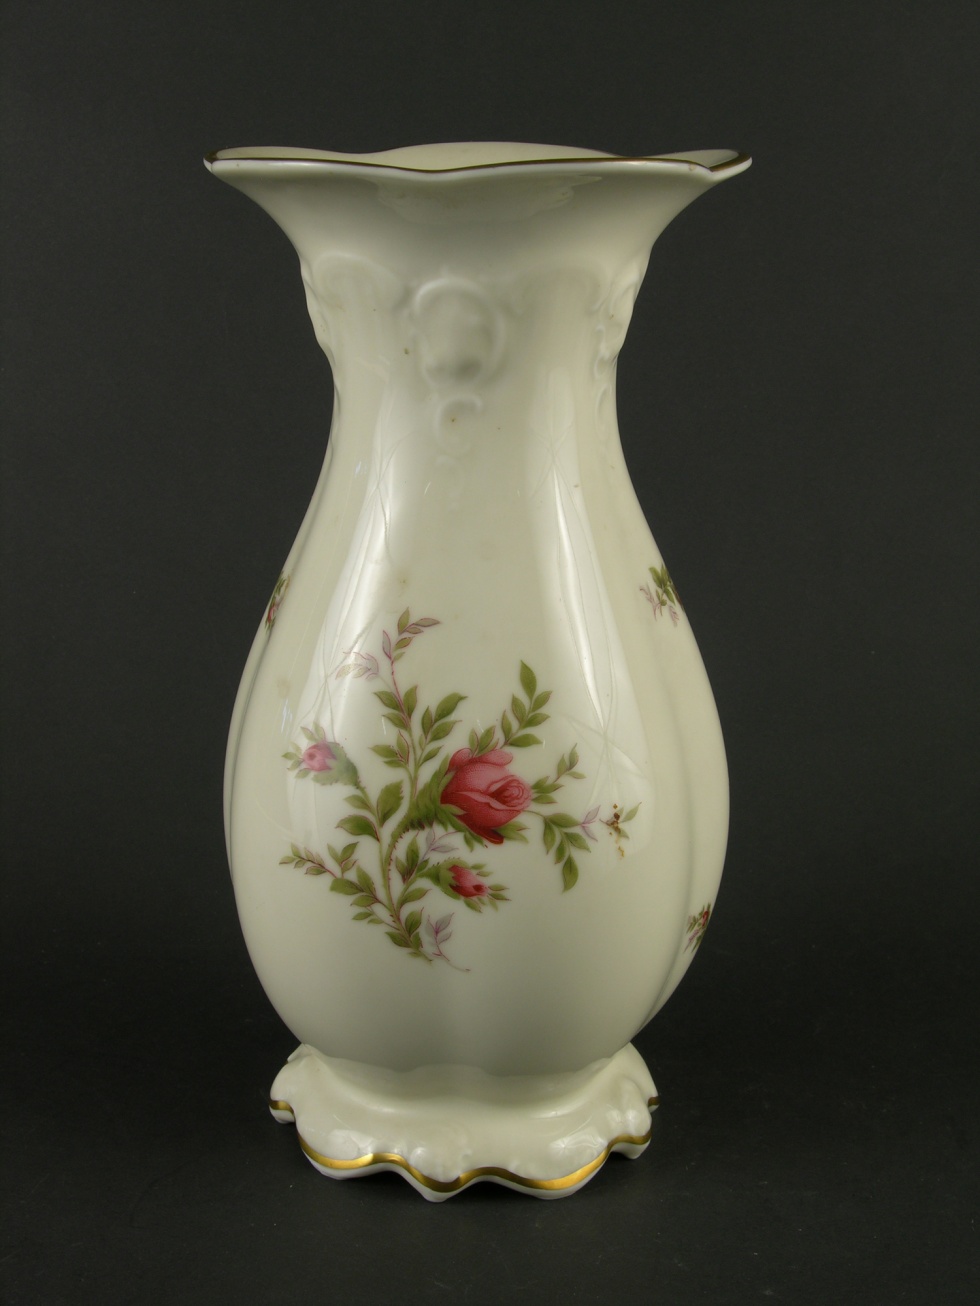 Vase mit Rosenknospen (Historisches Museum der Pfalz, Speyer CC BY)